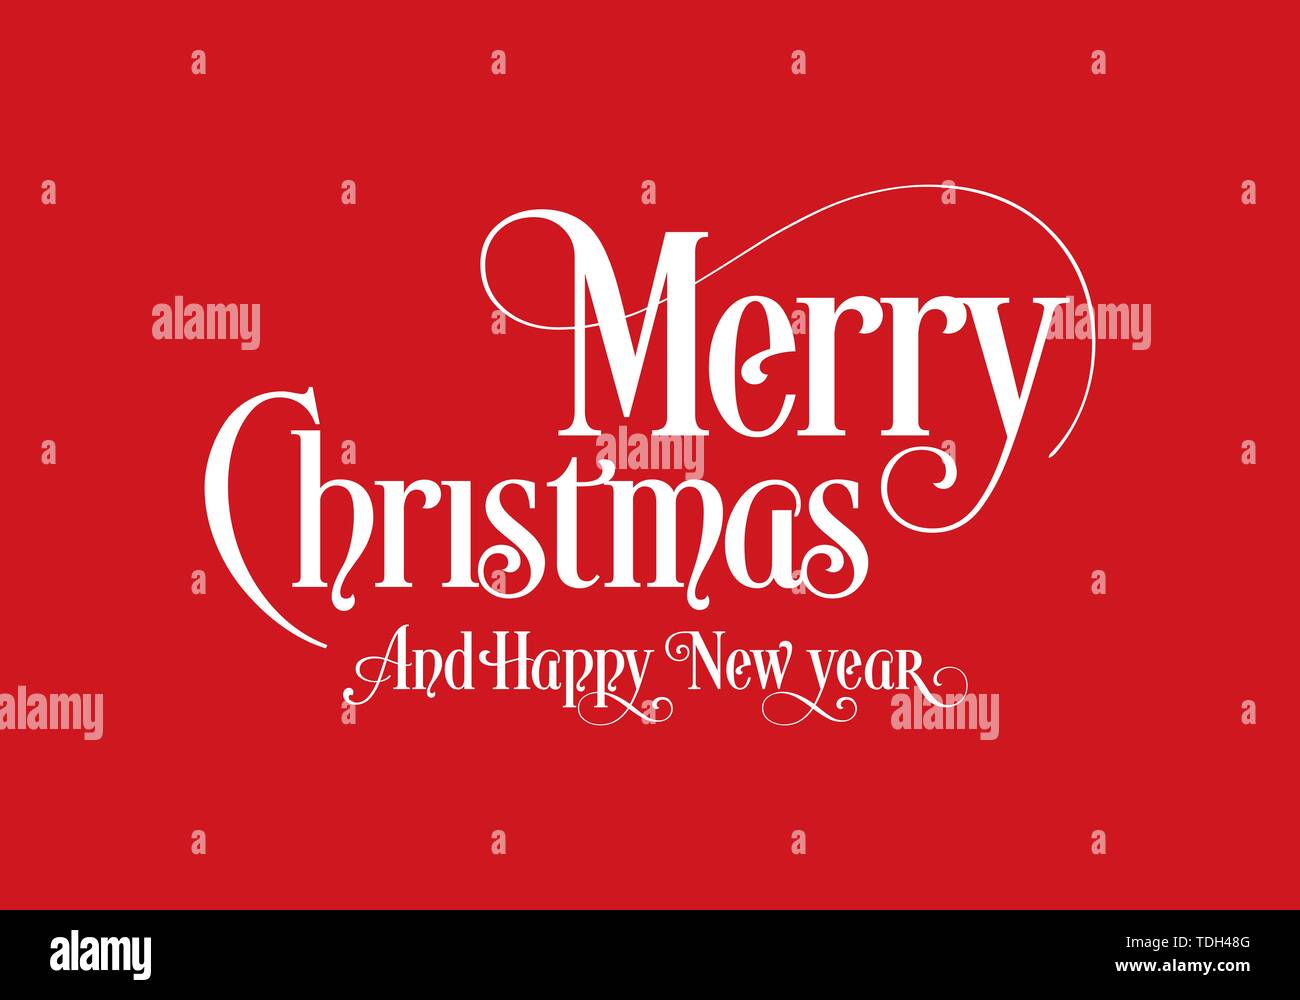 Felice Natale scritte Calligraphy testo Art Design con sfondo rosso. Merry Christmas testo Design Logo vettoriale, tipografia. Illustrazione Vettoriale